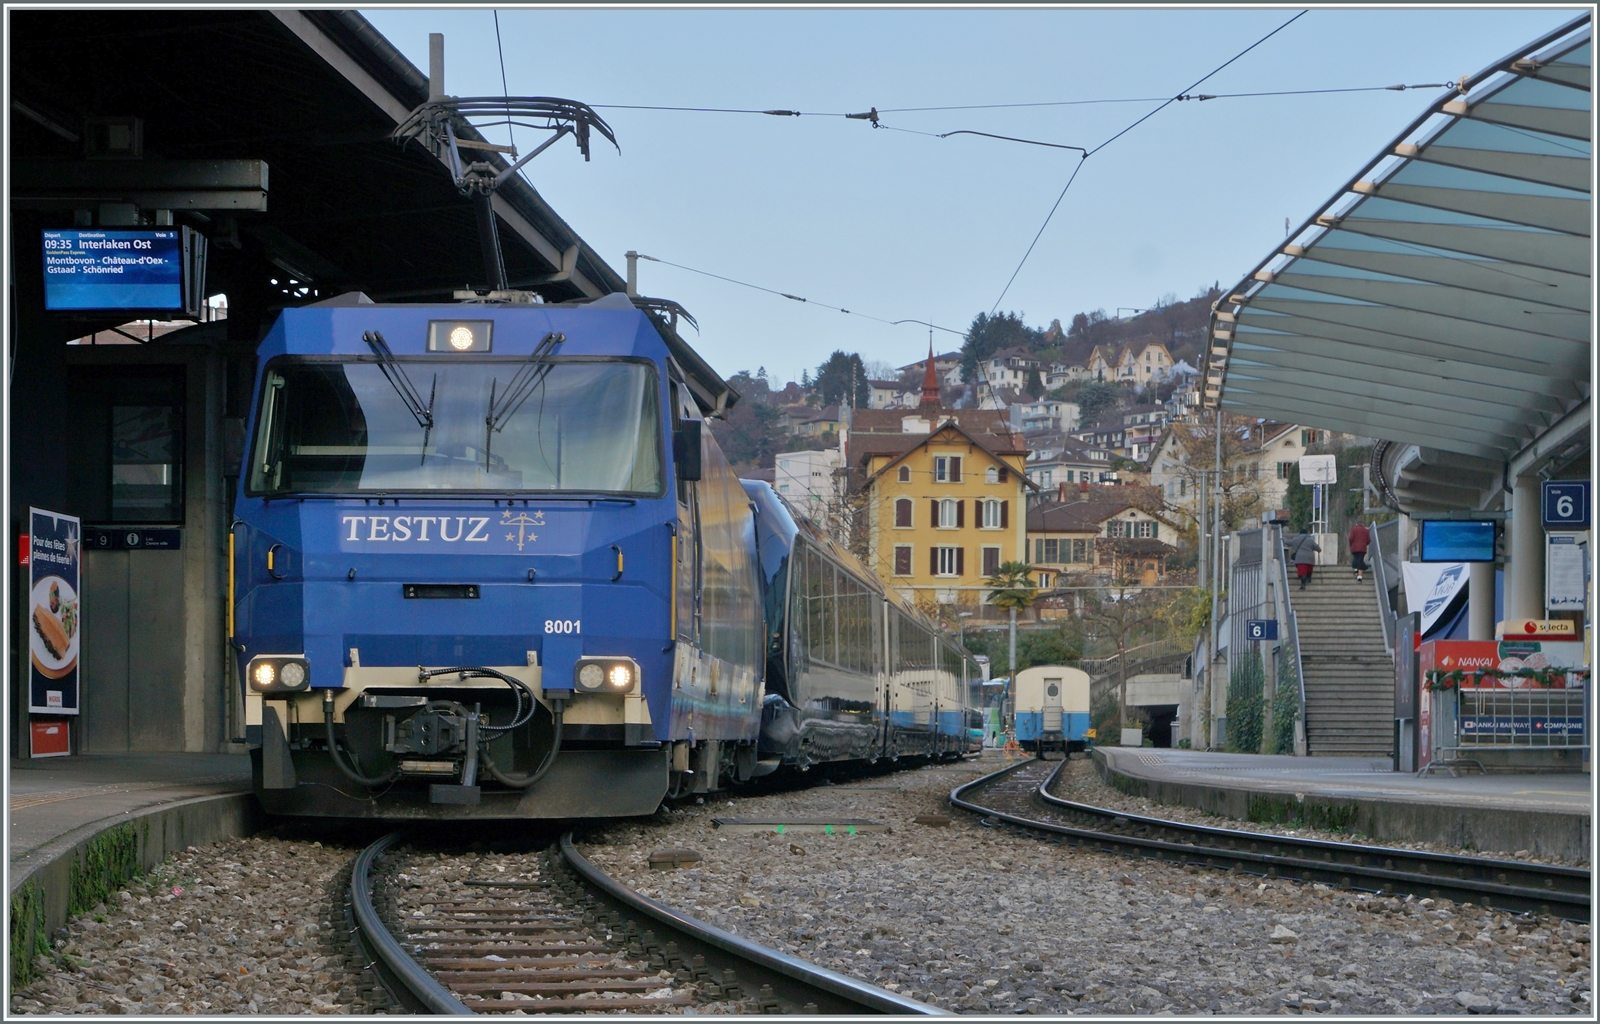 Die MOB Ge 4/4 8001 wartet mit den Spurwechselwagen Classe Prestige und 2. Klasse (96 85 8300 184-5 CH-MOB), dem 2. Klasse Wagen 96 85 8300 284-3 CH-MOB) dem 1. Klasse Wagen 96 85 8300 194-4 CH-MOB), dem Schlusswagen mit 1. Klasse und Classe Prestige (96 85 8300 184-5 CH-MOB) als GPX GoldenPass Express 4068 in Montreux auf die Abfahrt nach Interlaken Ost. 

Wie aus den Wagenreihung hervorgeht, führt der Zug keinen Speisewagen. Besonders in der Classe Prestige und auch in der 1. Klasse regionale Köstlichkeiten am Platz serviert, wie z.B. Wein, Käse und Kaviar 
Kaviar? 
Nun, allem Anschein nach stammt der Kaviar aus Frutigen, und das ist ja praktisch im Einzugsgebiet des GPX...

11. Dezember 2022 